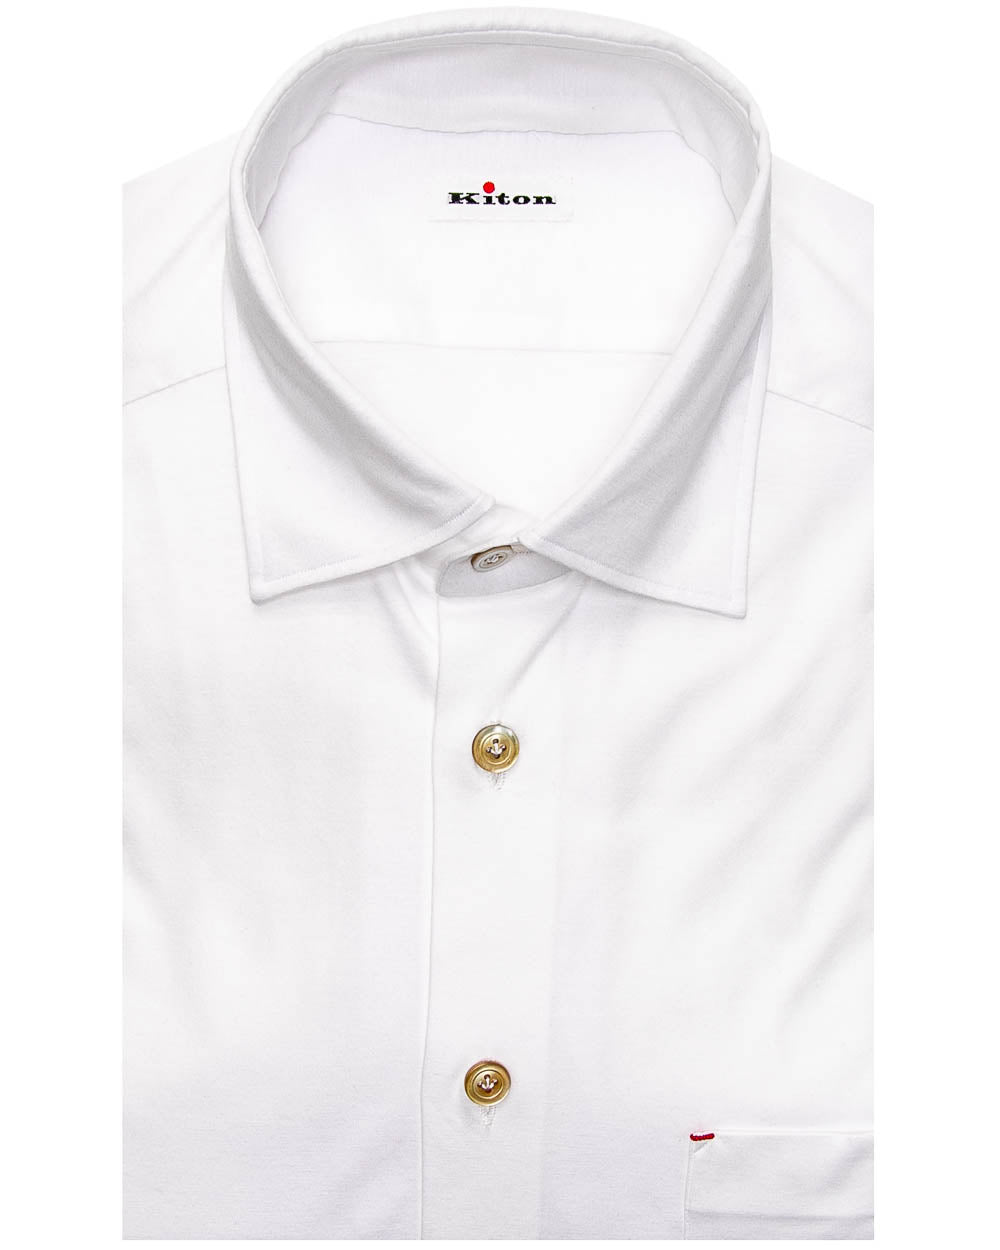 White Jersey Knit Shirt